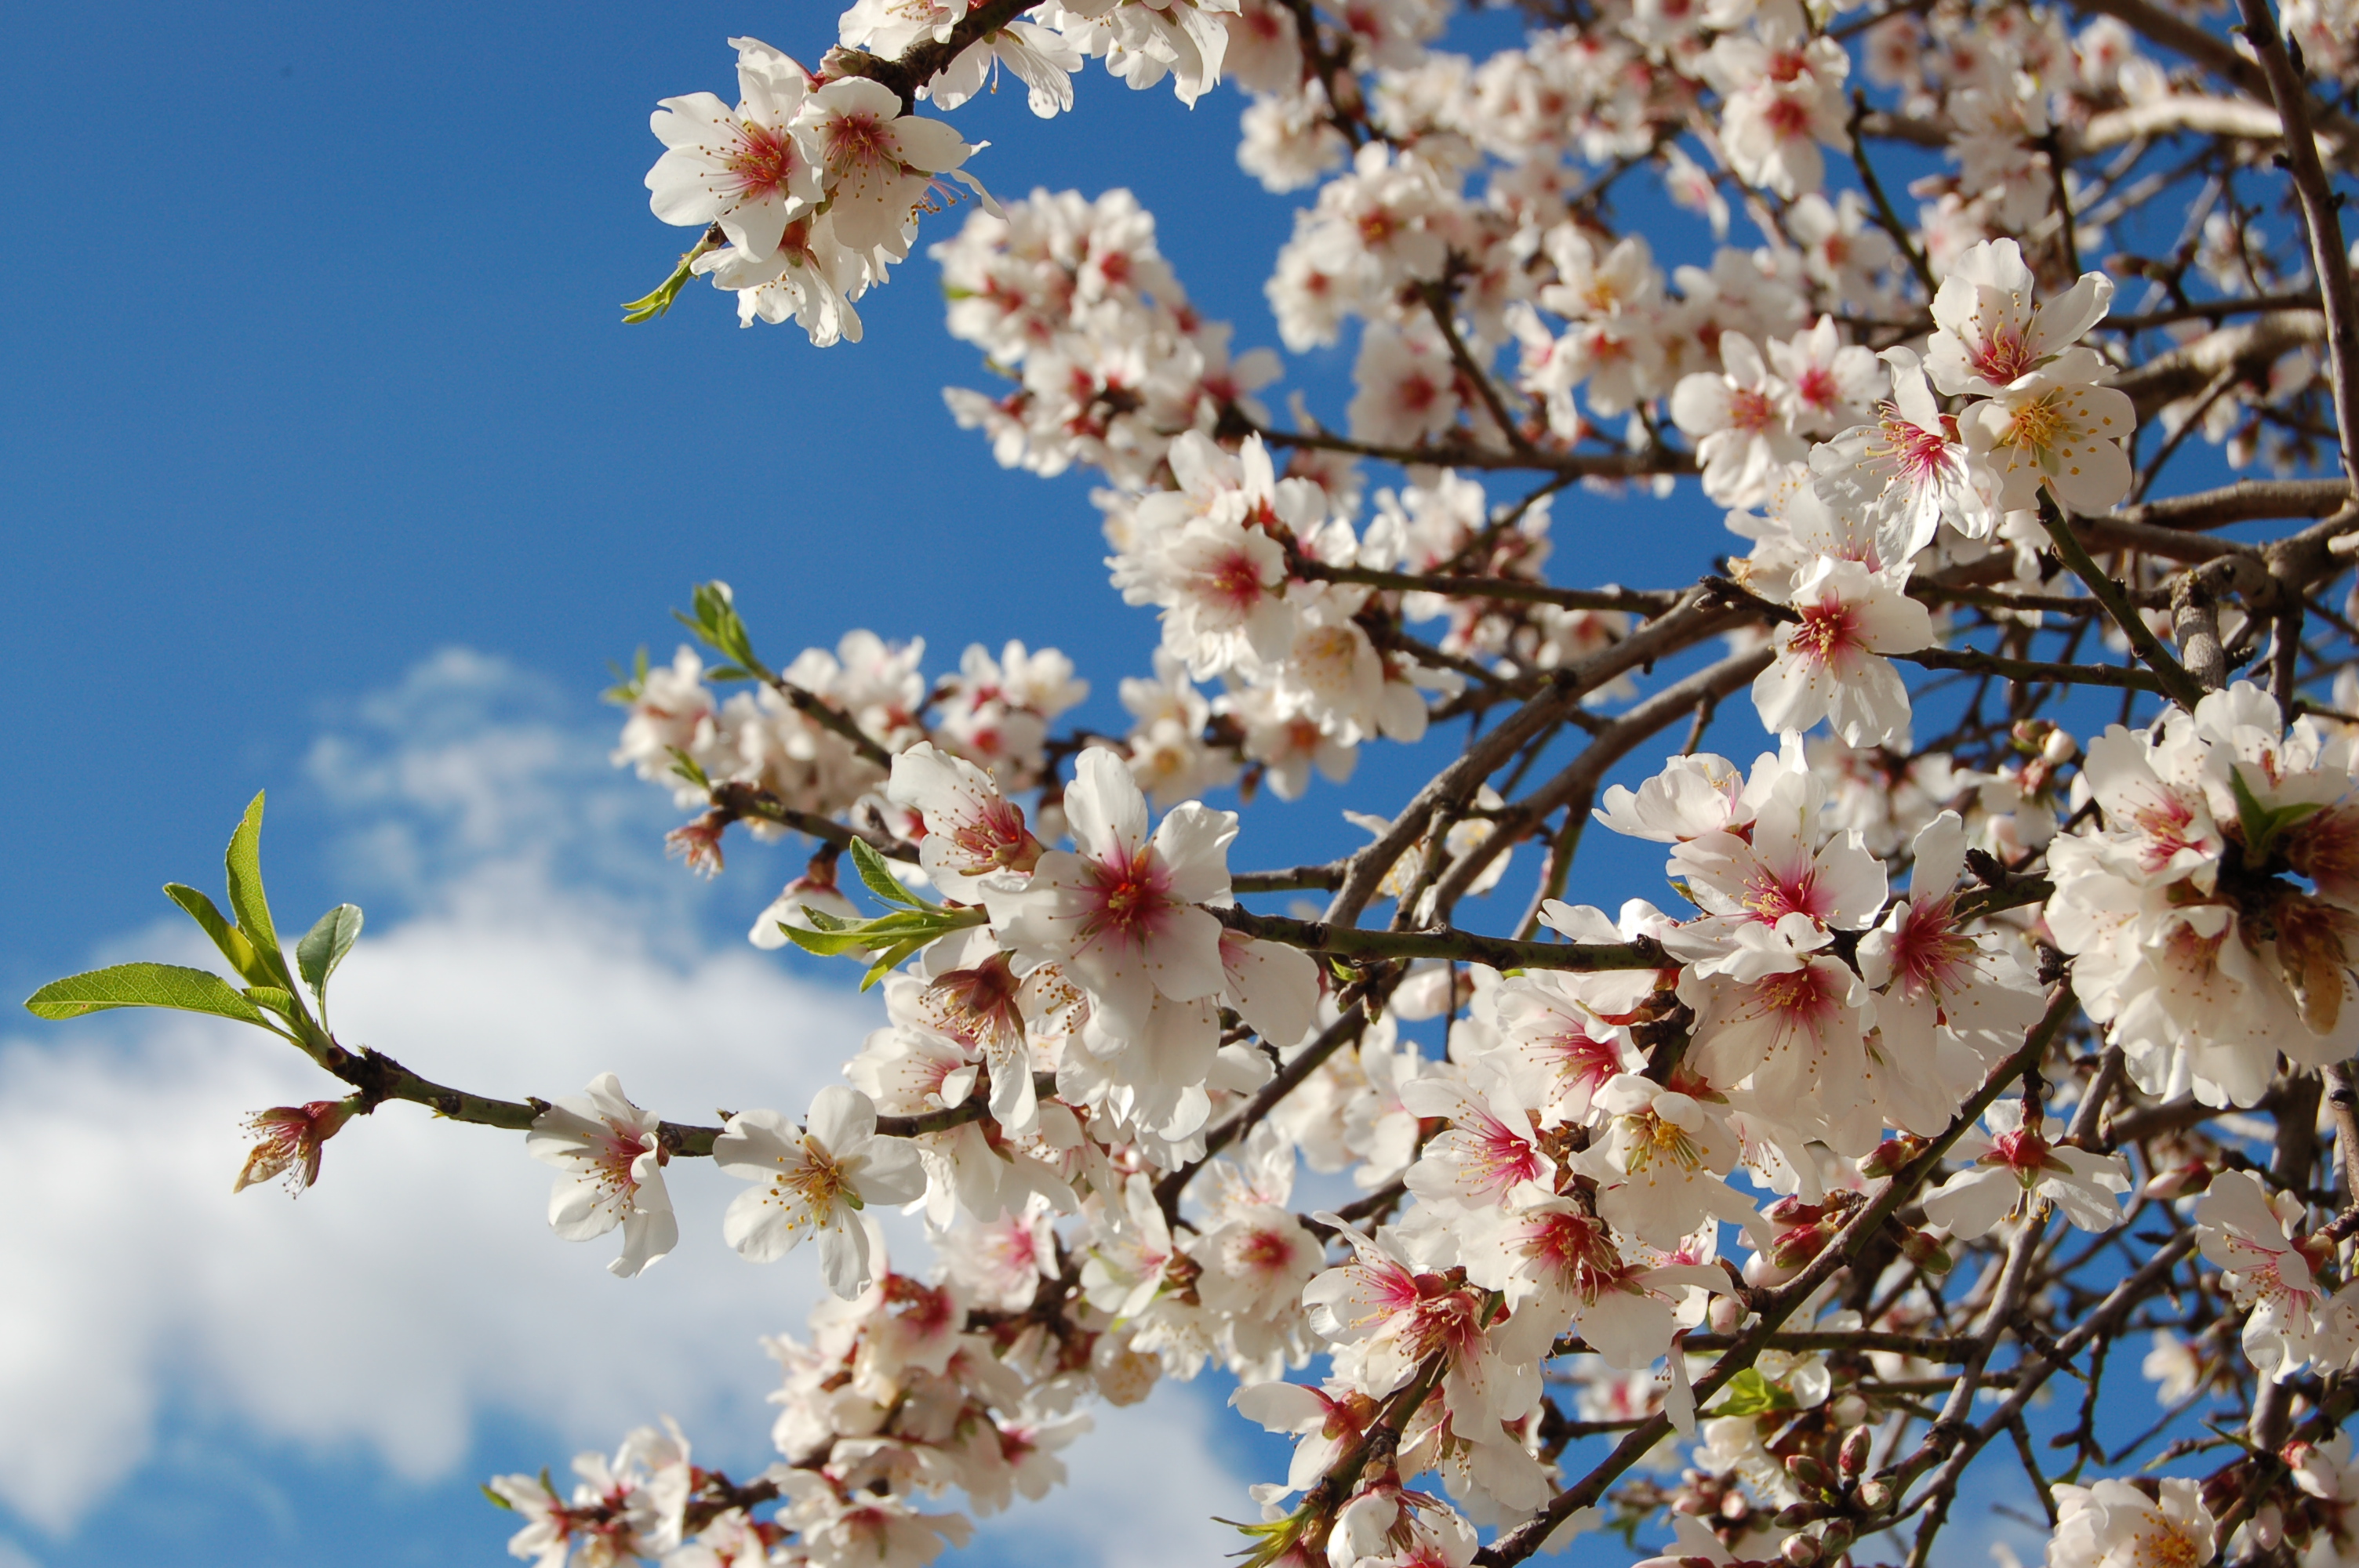 Mallorca + February = almond blossom | Living in rural Mallorca